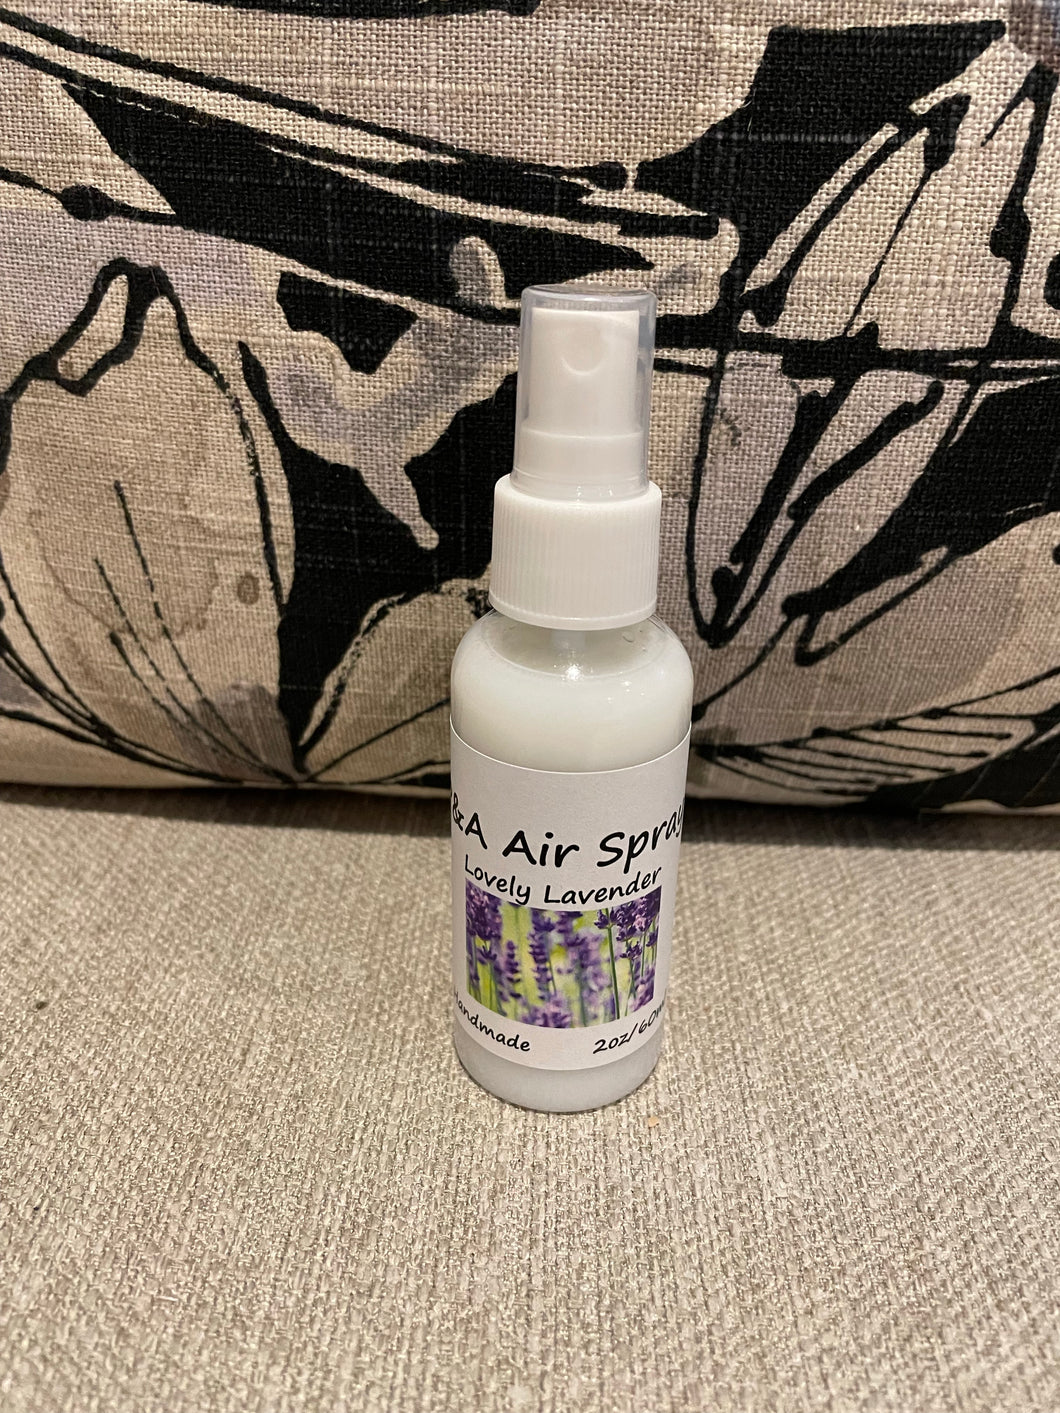 P&A Air Spray